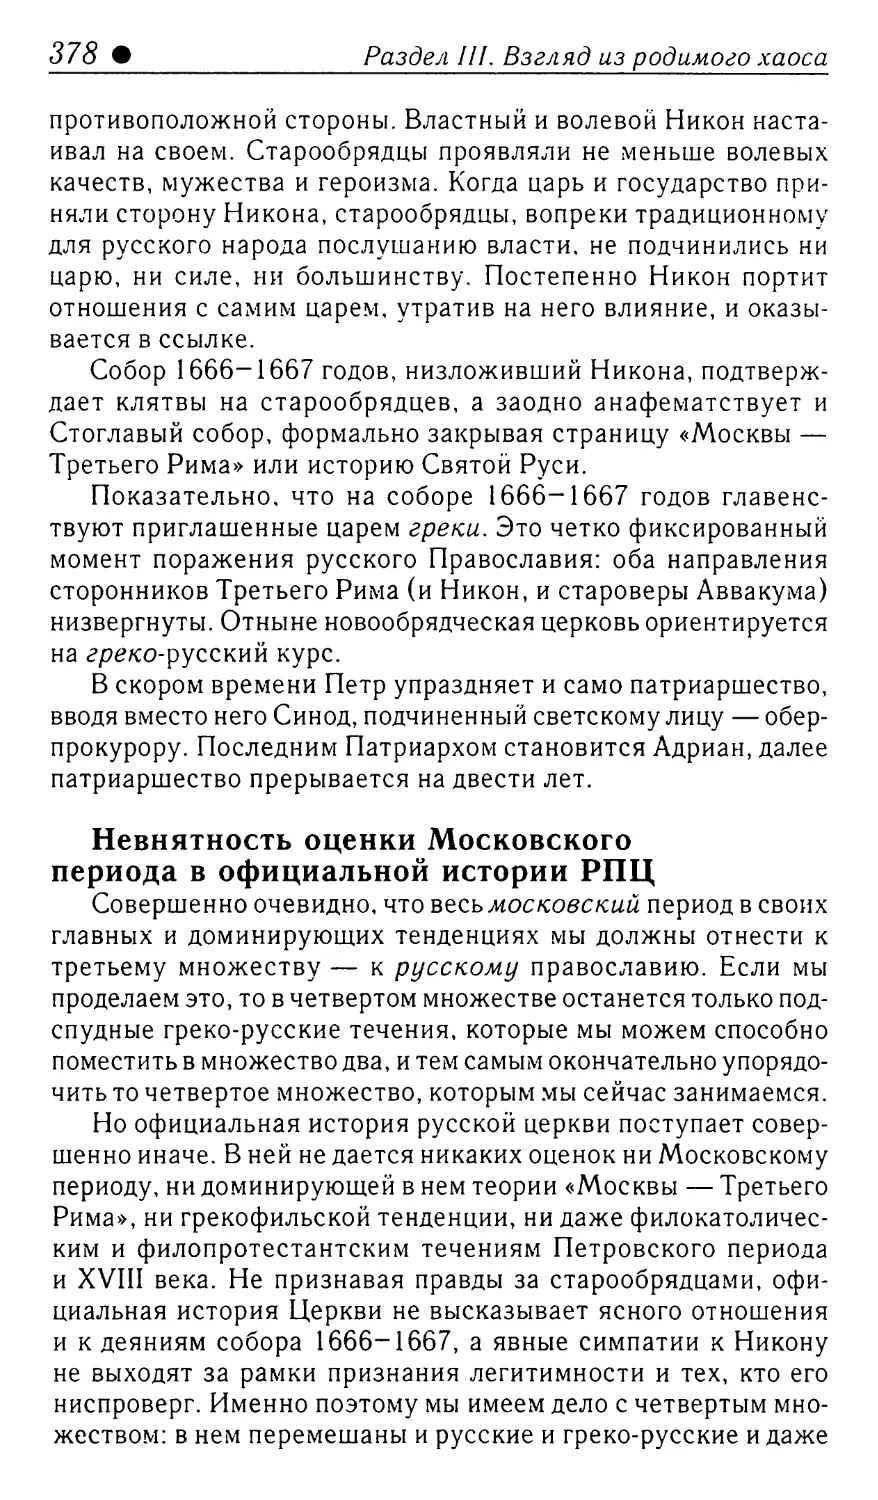 Невнятность оценки Московского периода в официальной истории РПЦ